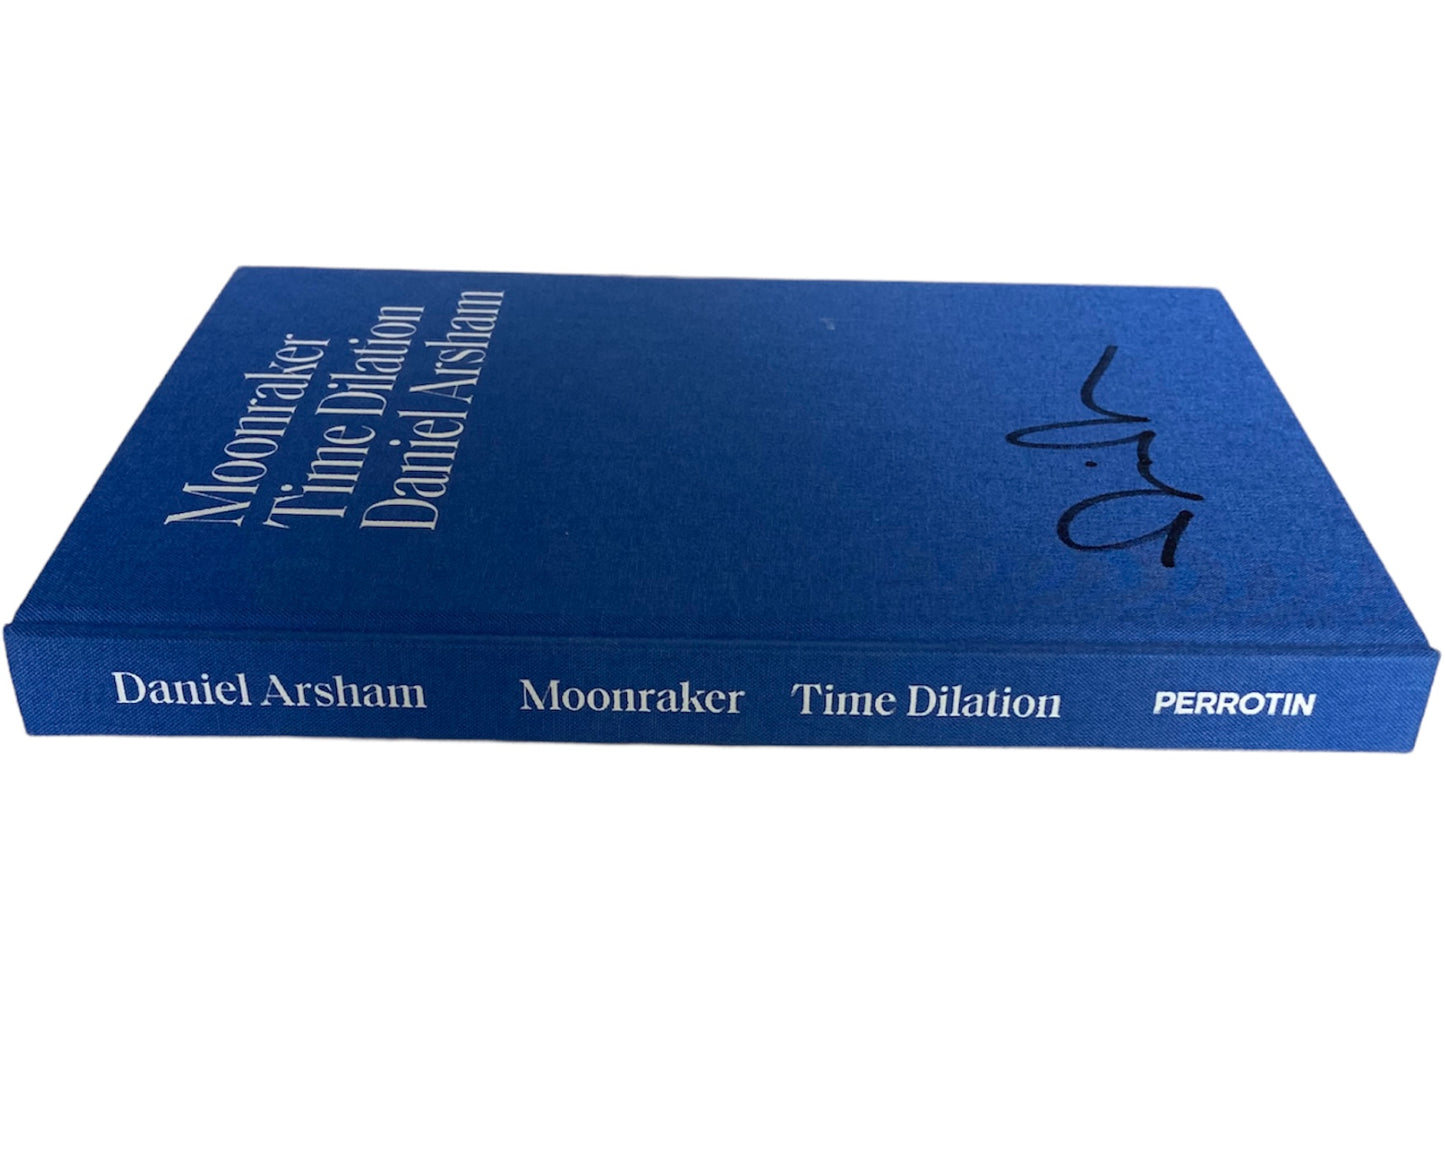 Daniel Arsham Moonraker Time Dilation Signed Book